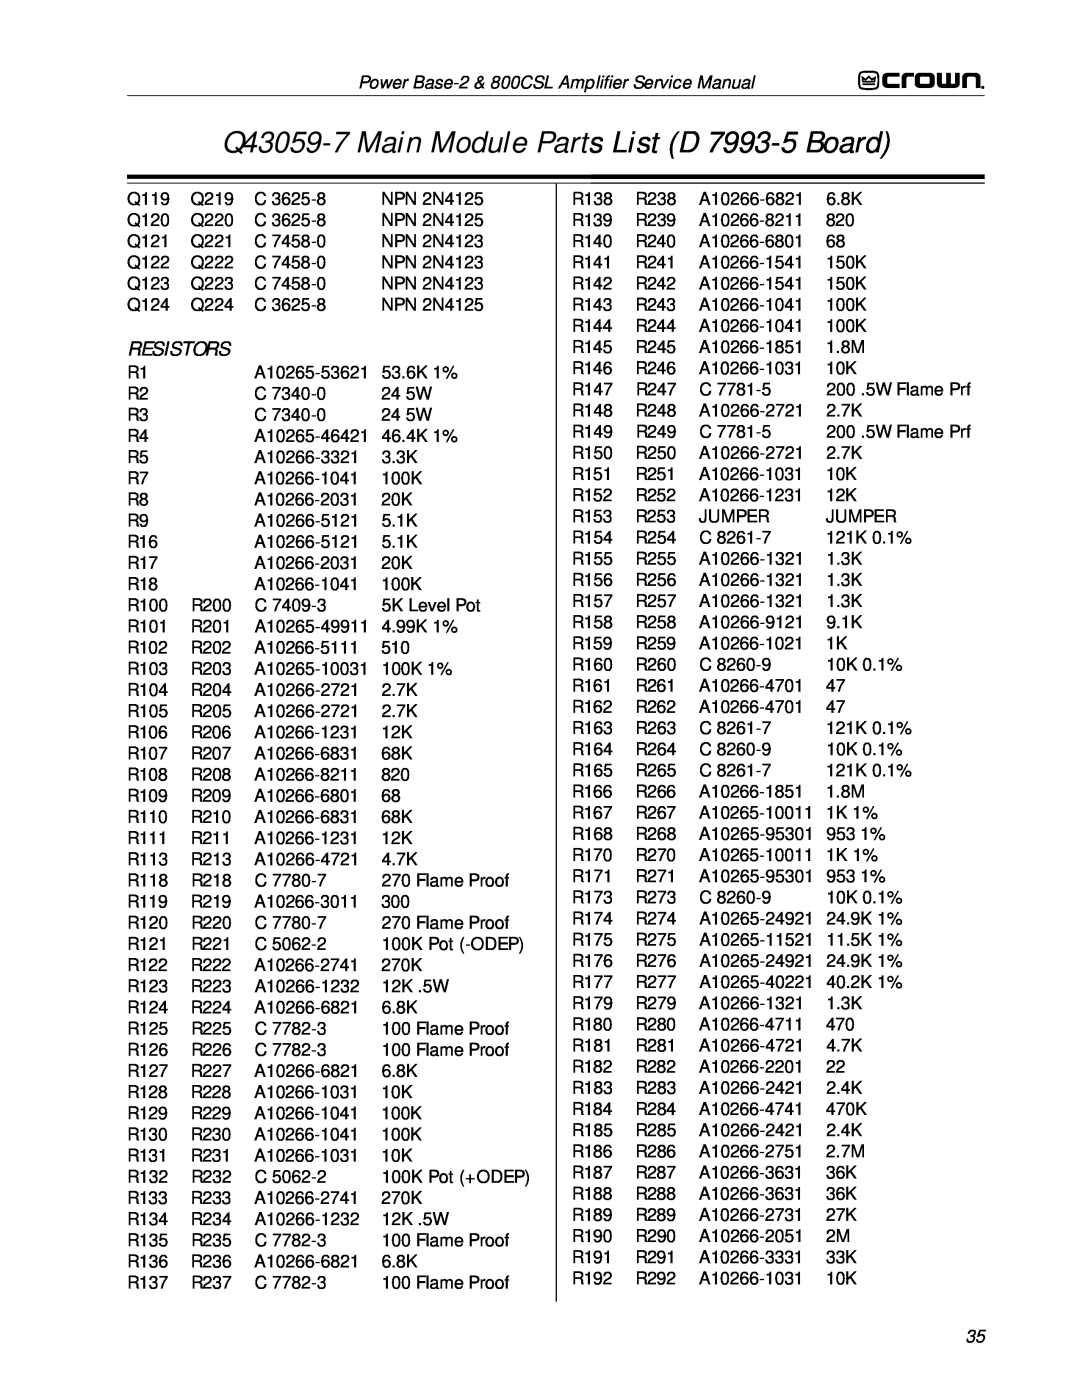 Crown Audio 800CSL service manual Q43059-7Main Module Parts List D 7993-5Board, Resistors, Q119 